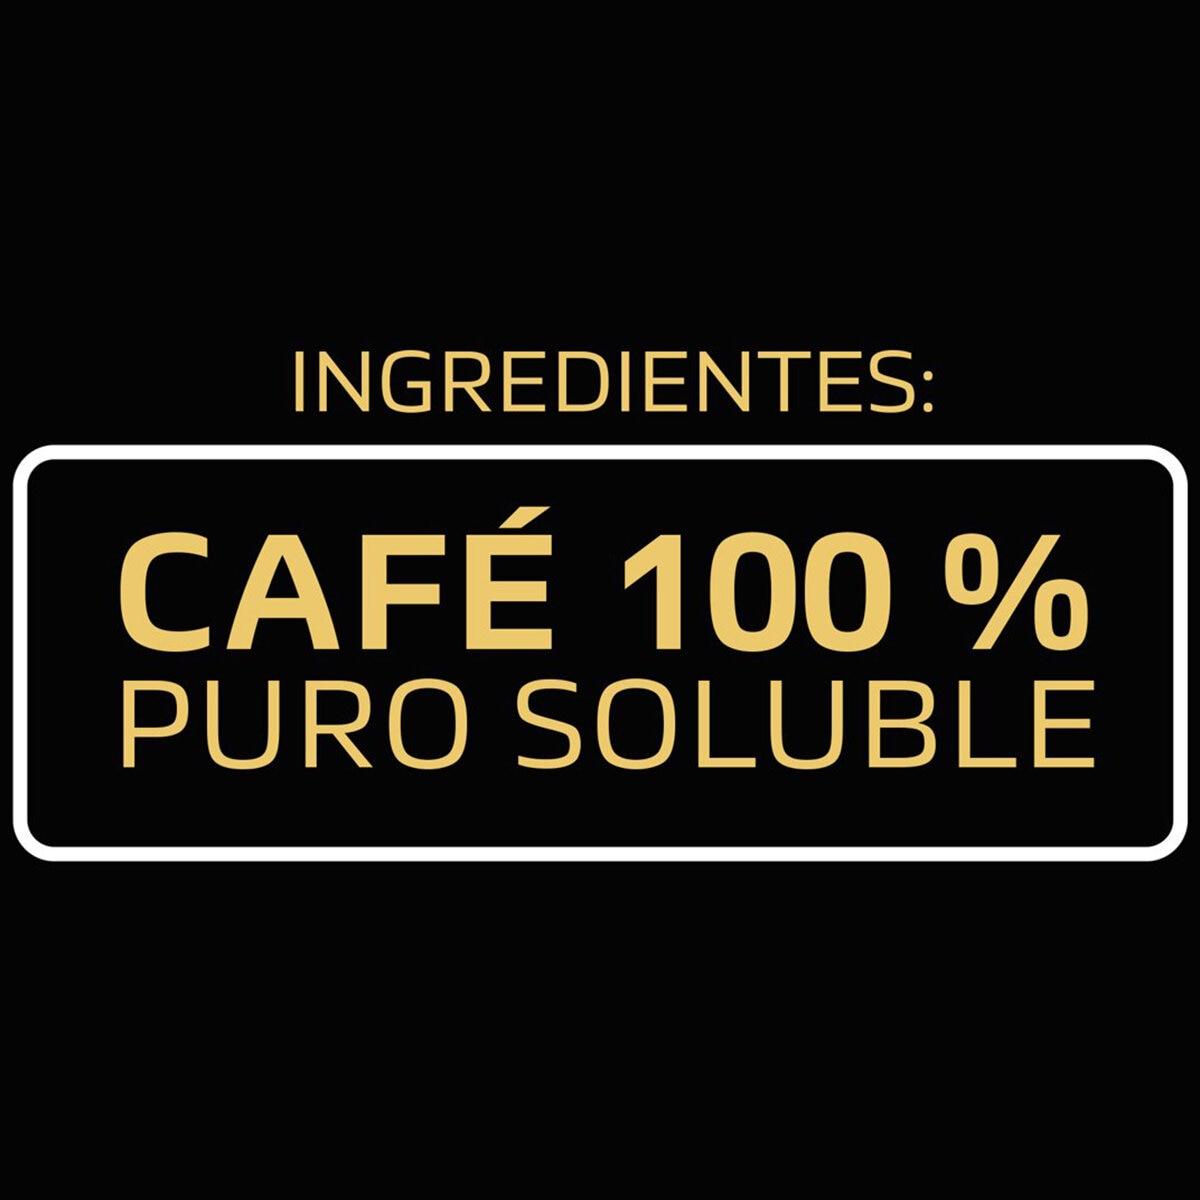 Taster's Choice Café Soluble Descafeinado 250 g